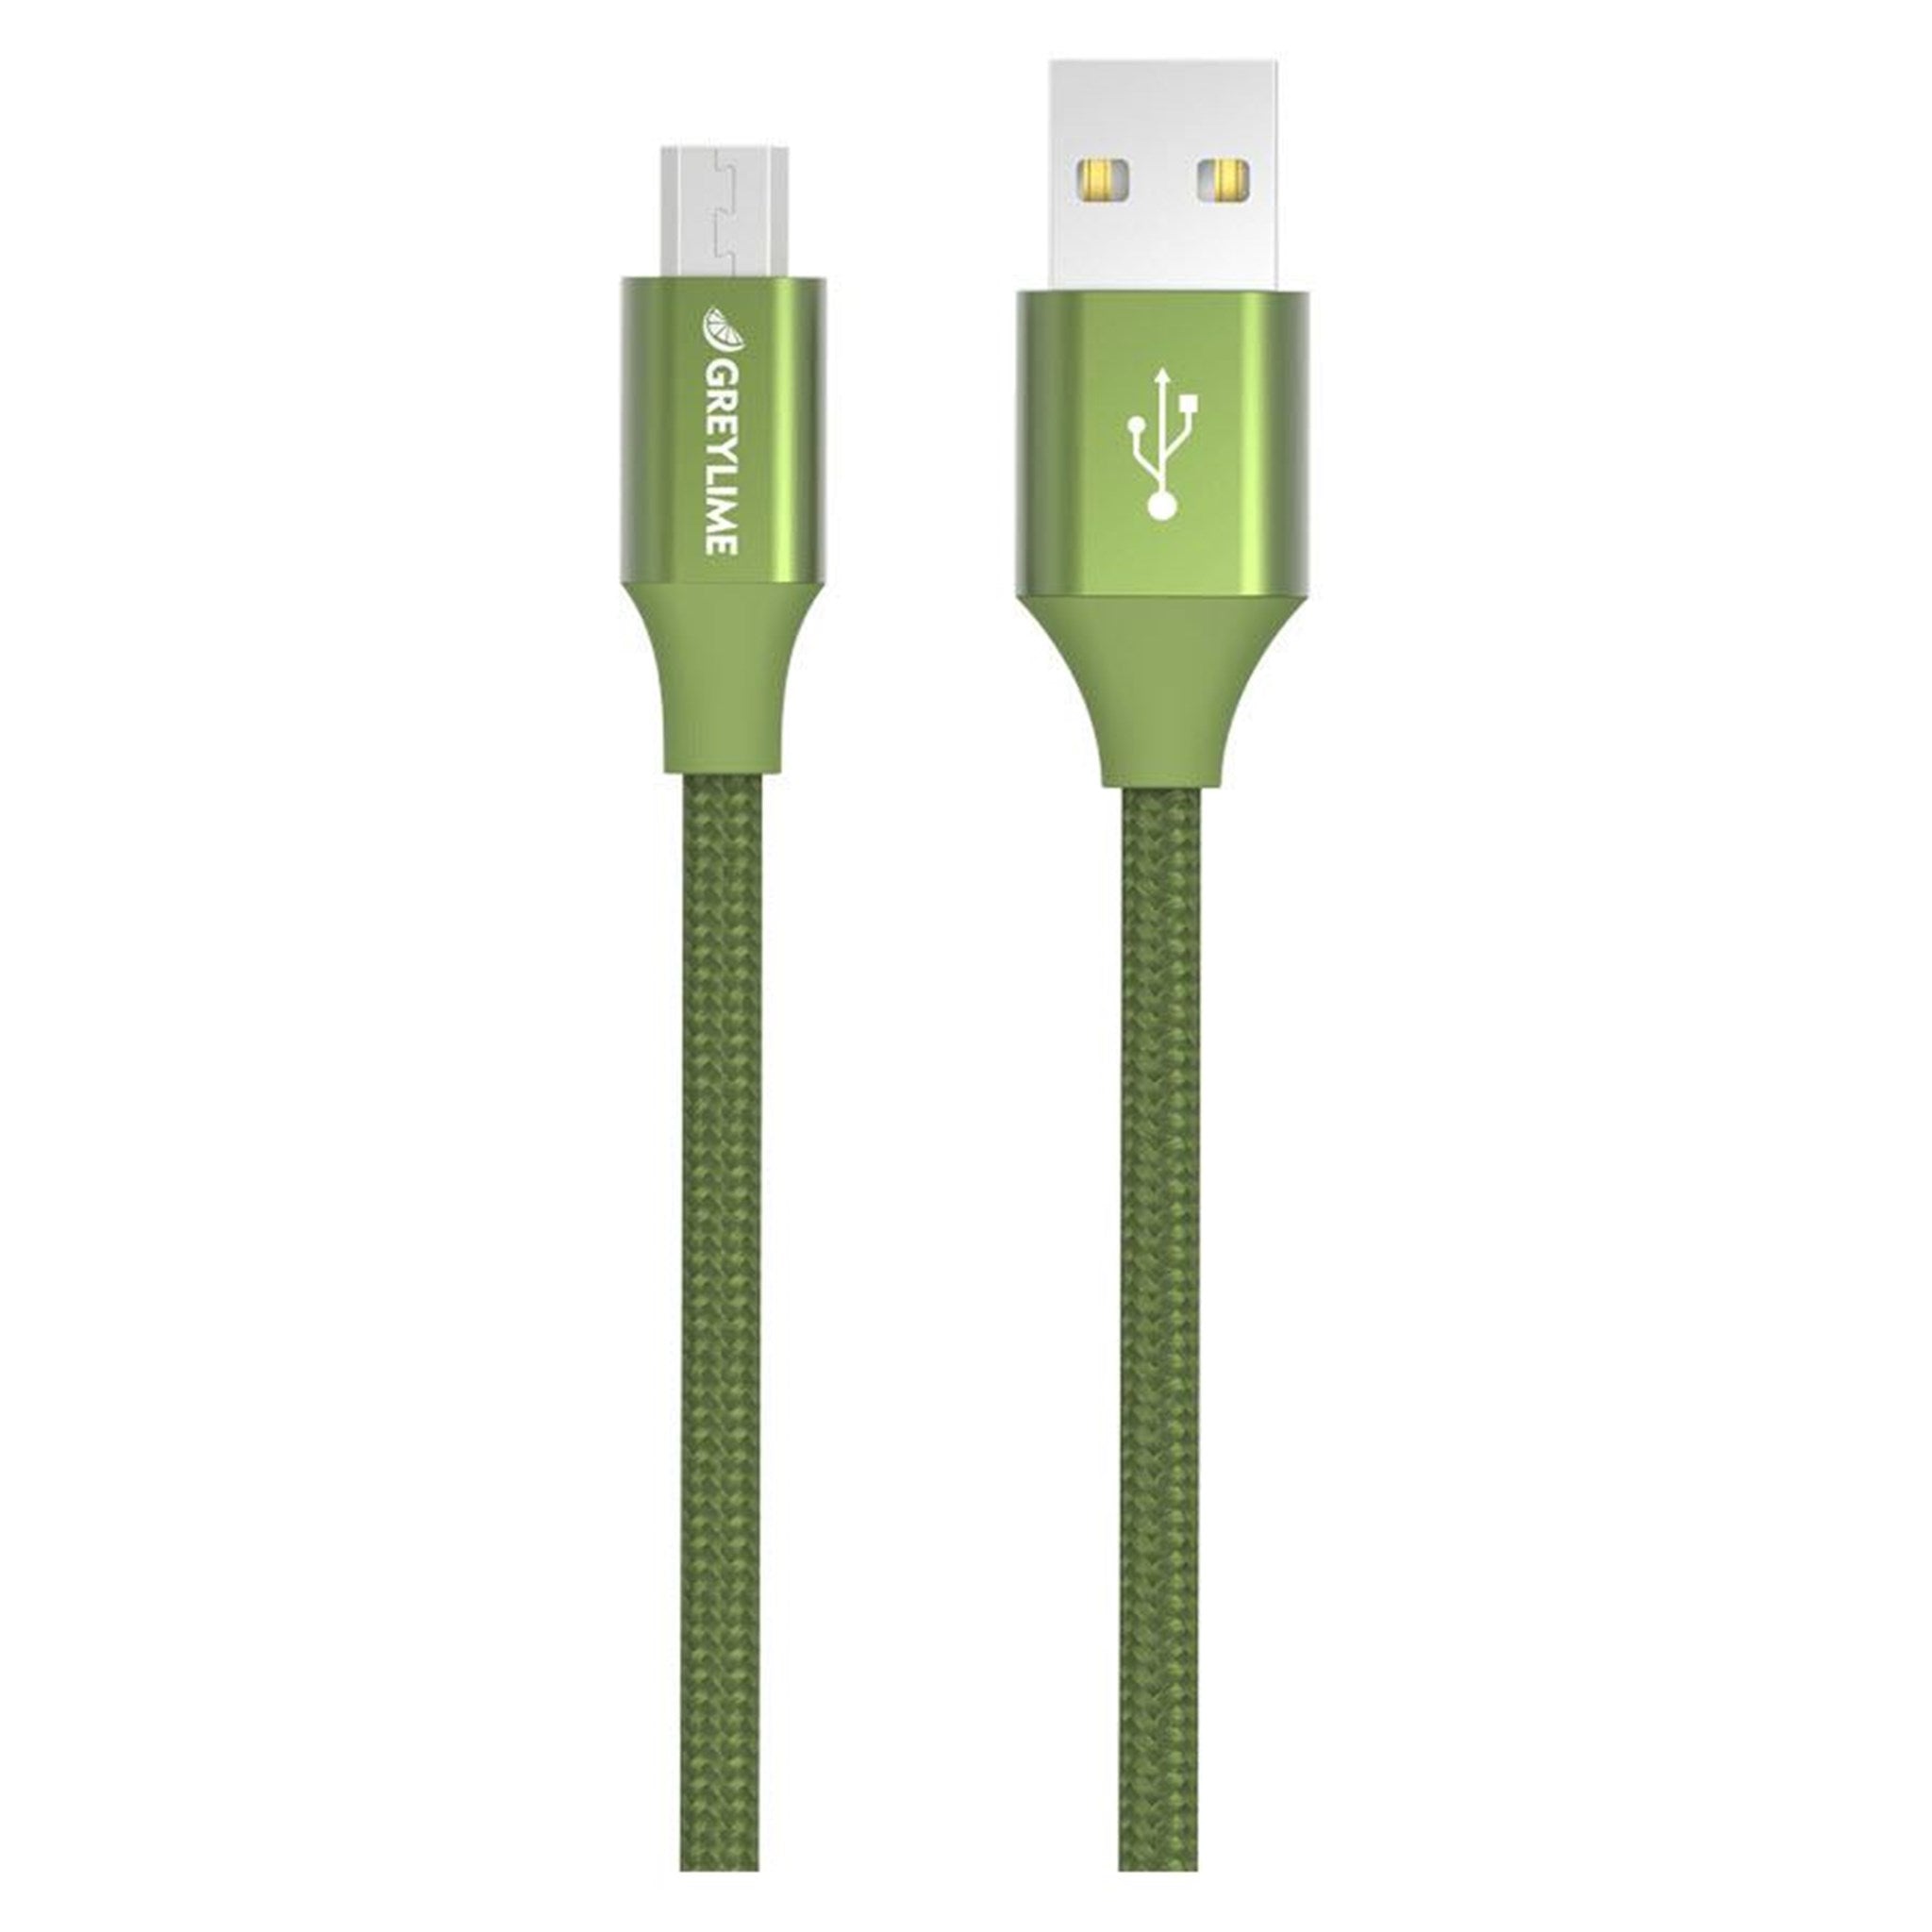 Billede af GreyLime Braided USB-A til Micro USB Kabel Grøn 1m hos GreyLime